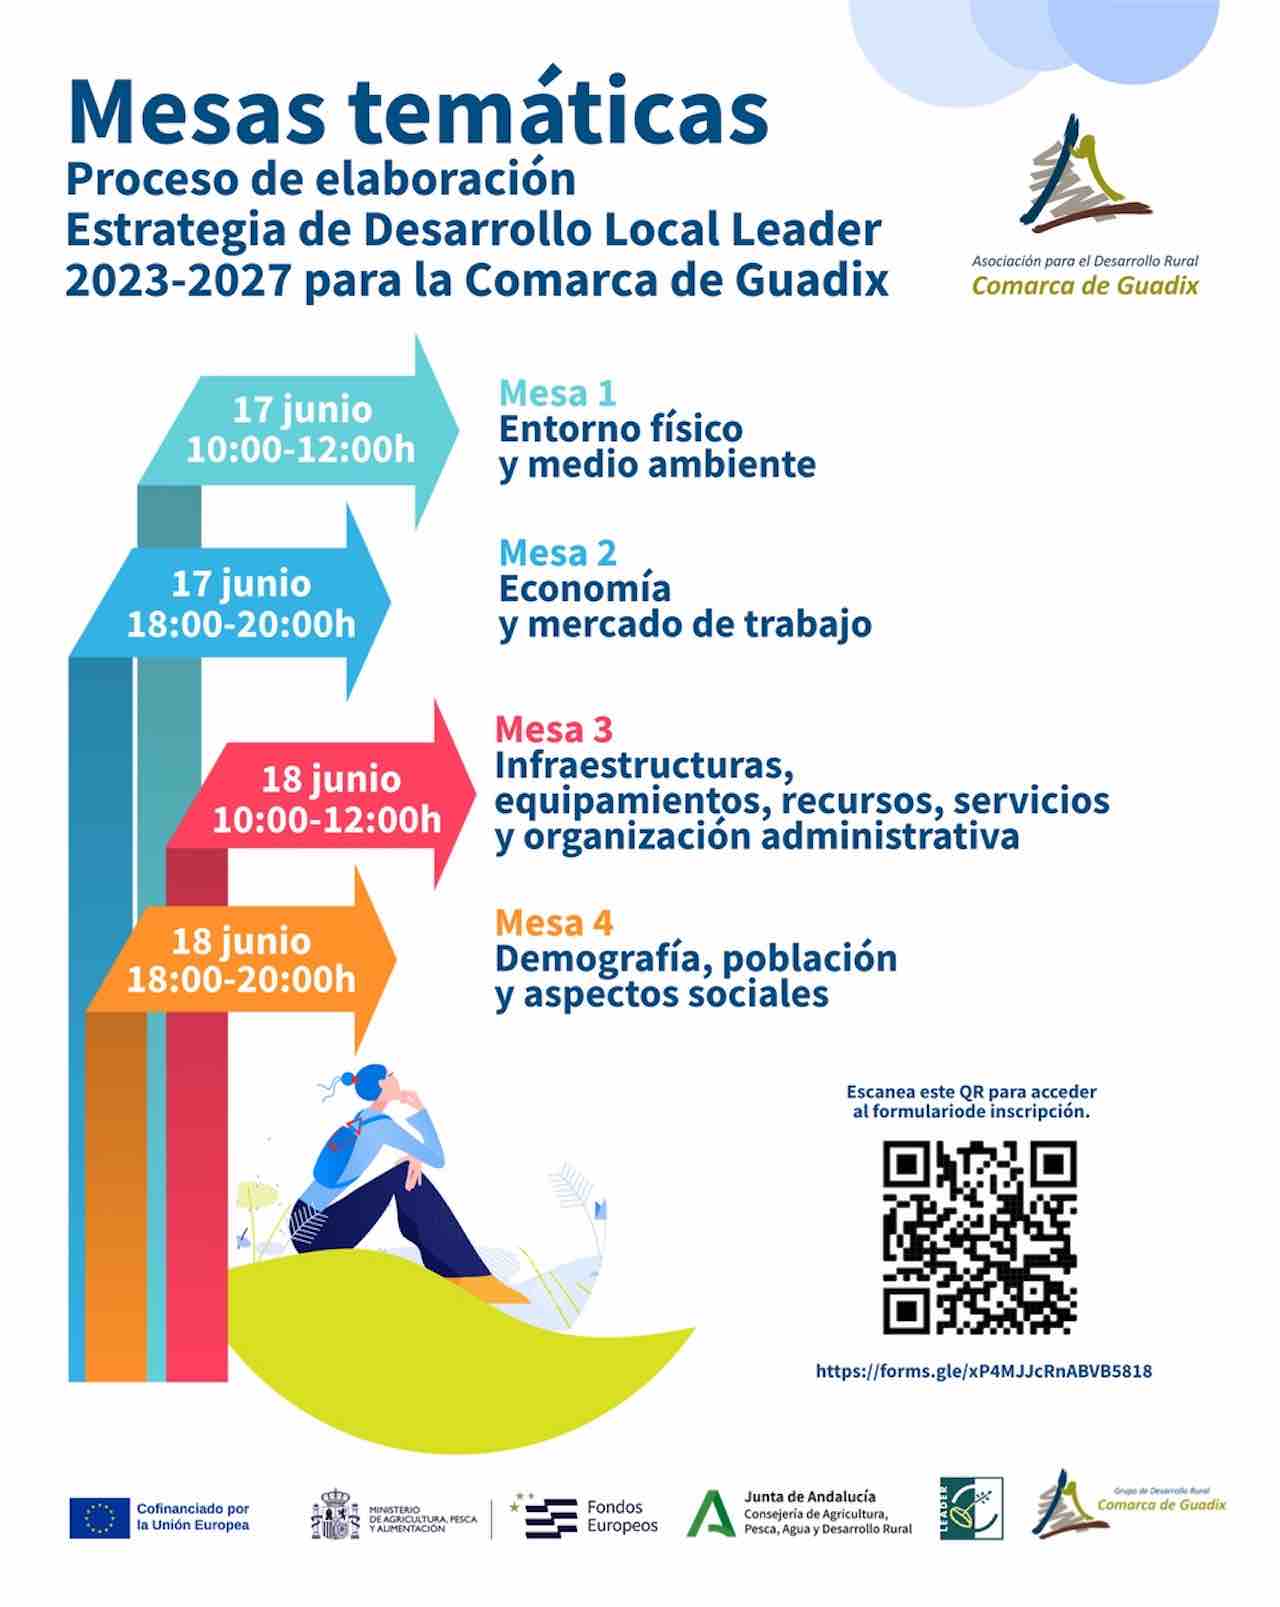 Nueva Estrategia de Desarrollo Local Leader en cuatro mesas temáticas organizadas por el GDR de Guadix